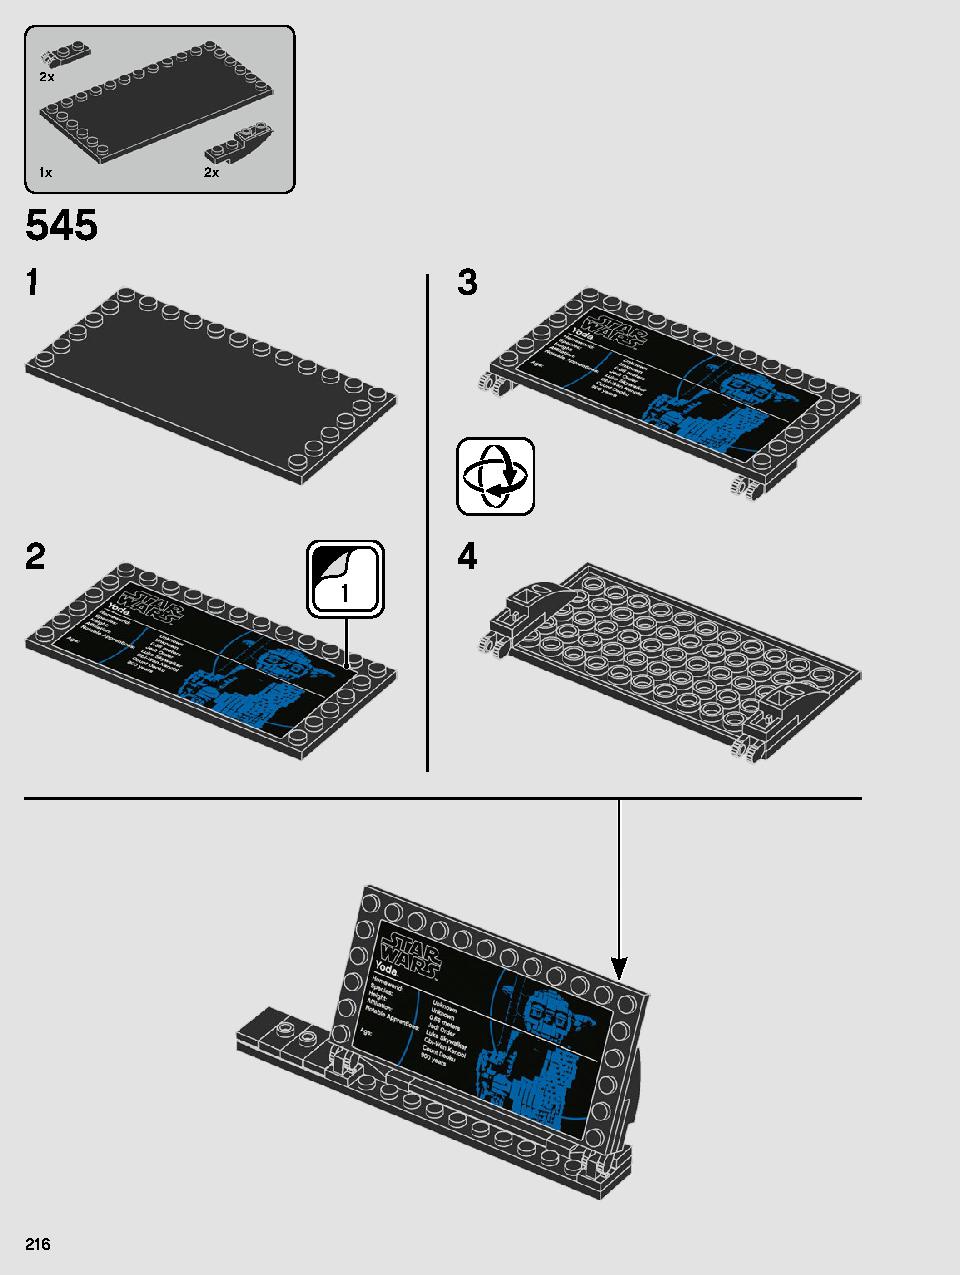 ヨーダ™ 75255 レゴの商品情報 レゴの説明書・組立方法 216 page